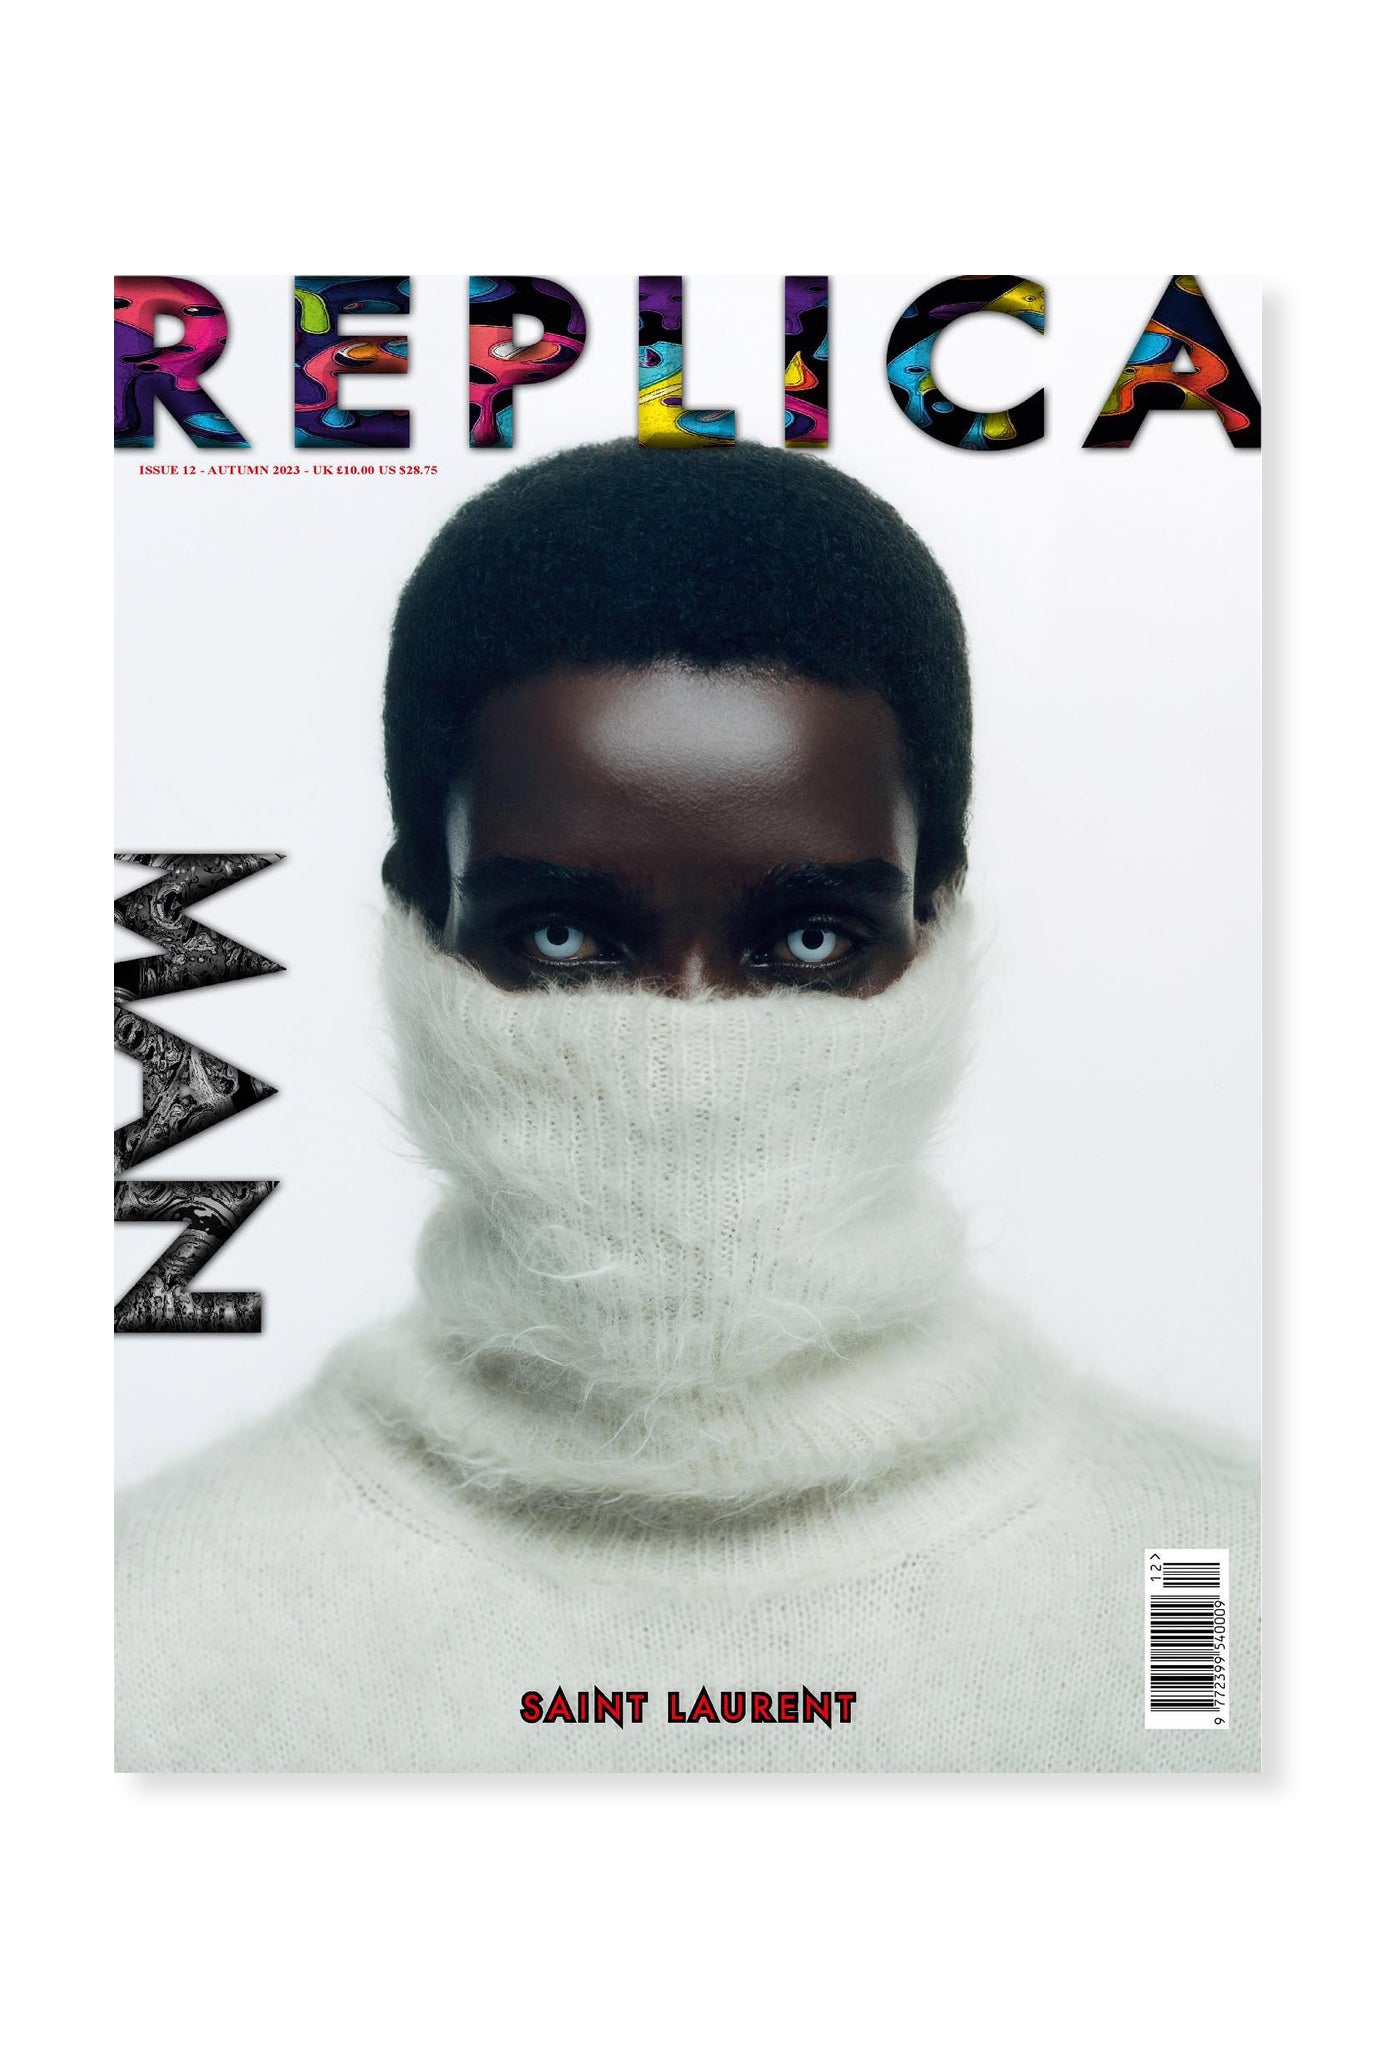 Replica, Issue 12